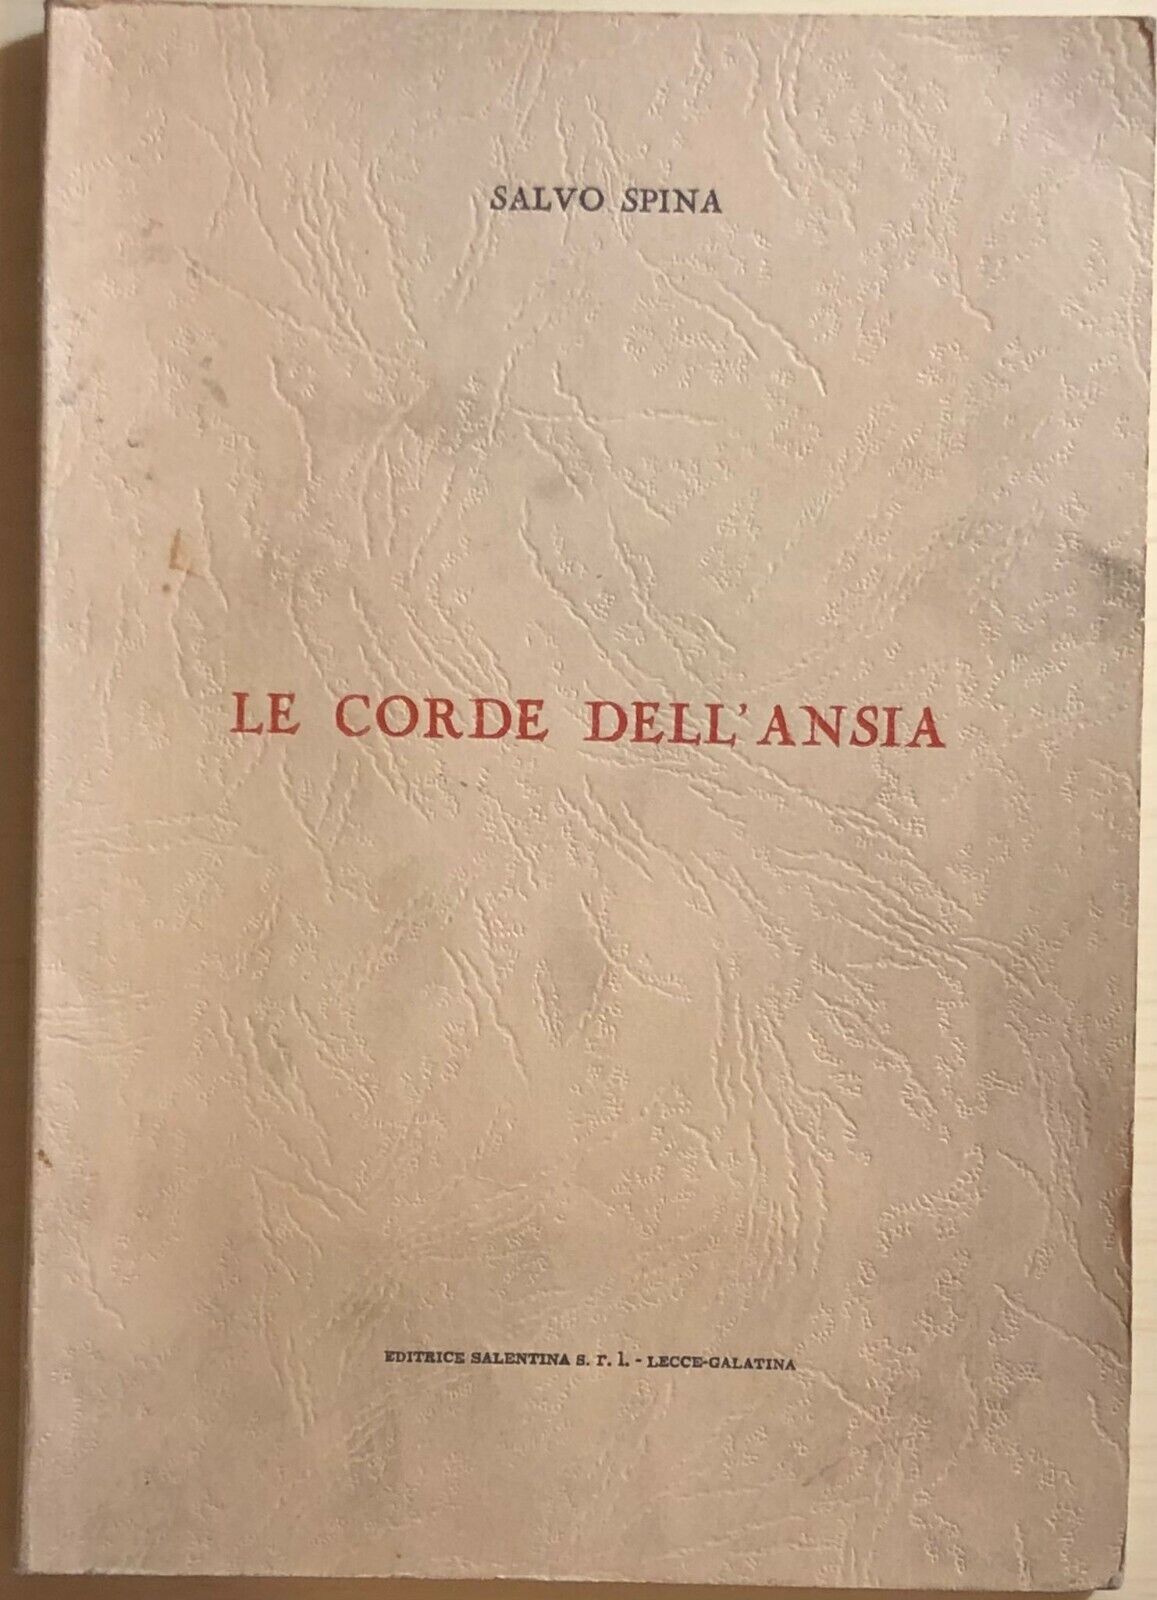 Le corde delL'ansia di Salvo Spina, 1962, Editrice Salentina